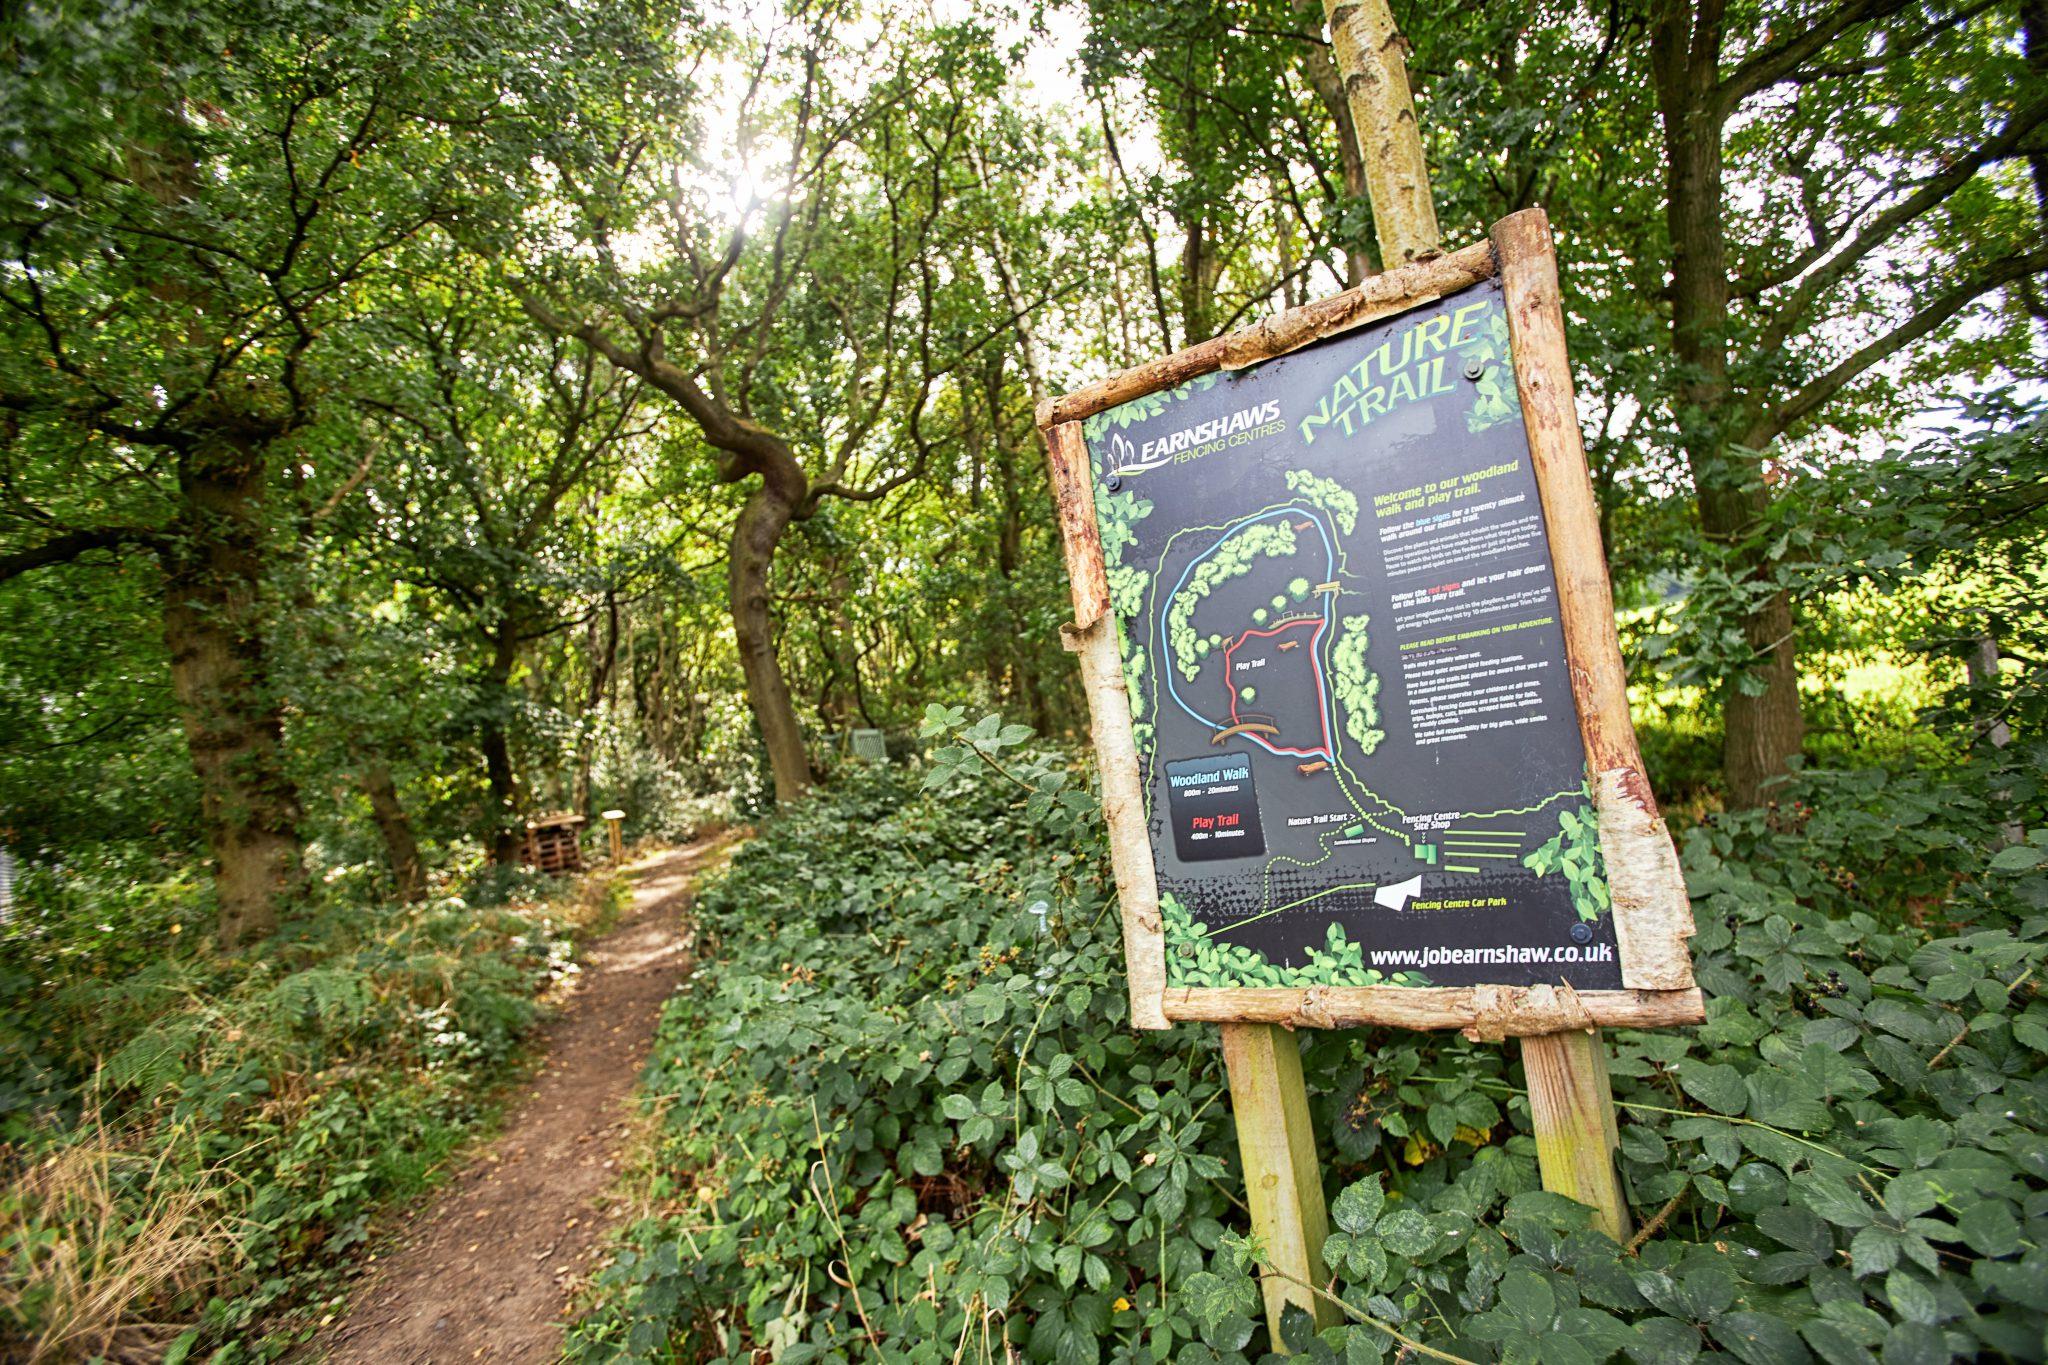 Earnshaws nature trail at Midgley